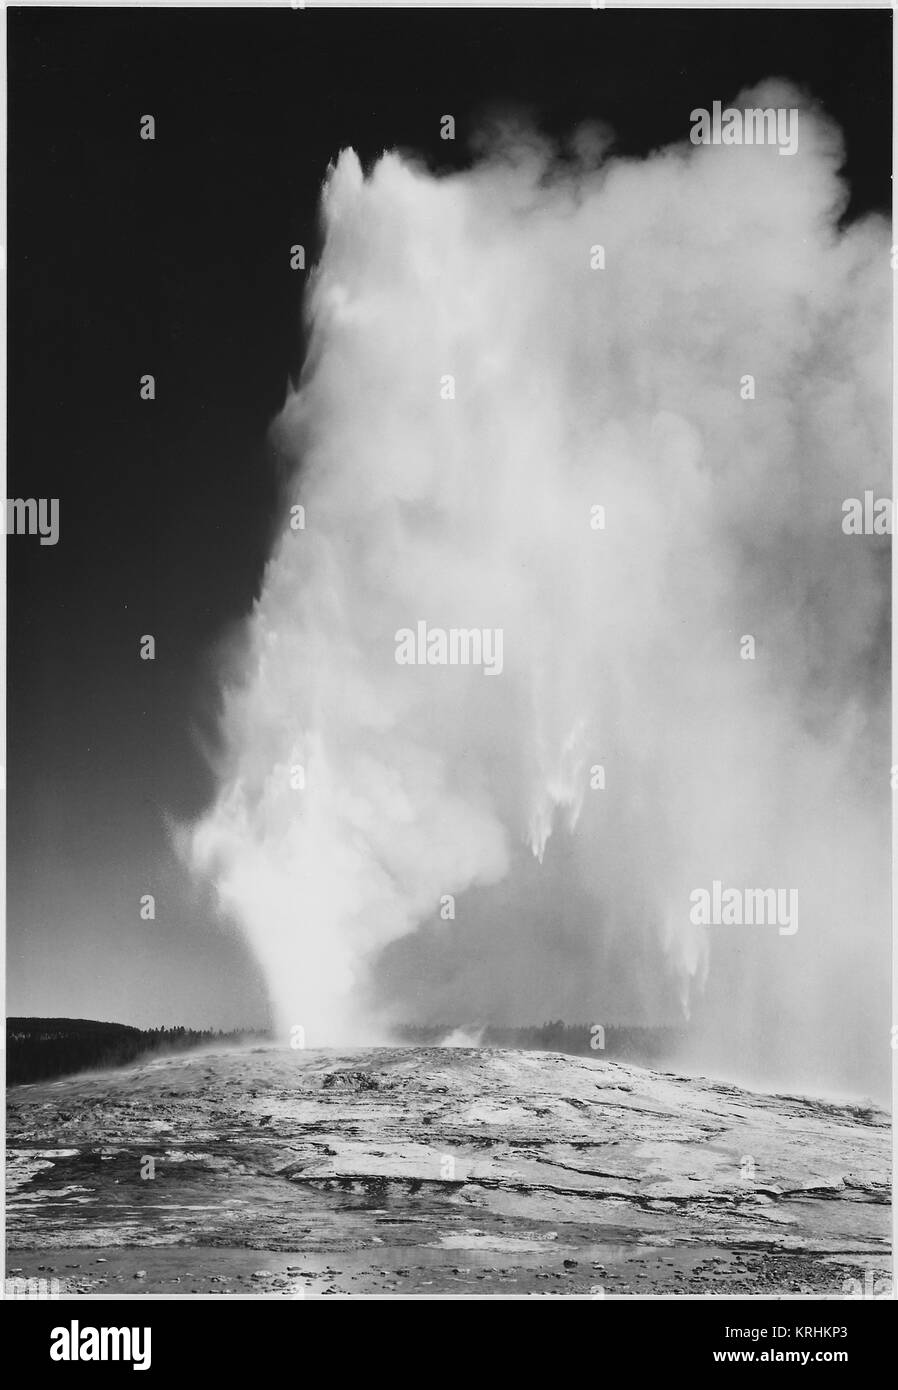 Presa all'alba o al crepuscolo da vari angoli durante l'eruzione. "Geyser Old Faithful Parco Nazionale di Yellowstone' Wyoming, geologia, geologiche. (Orientamento verticale) 1933 - 1942 Foto Stock